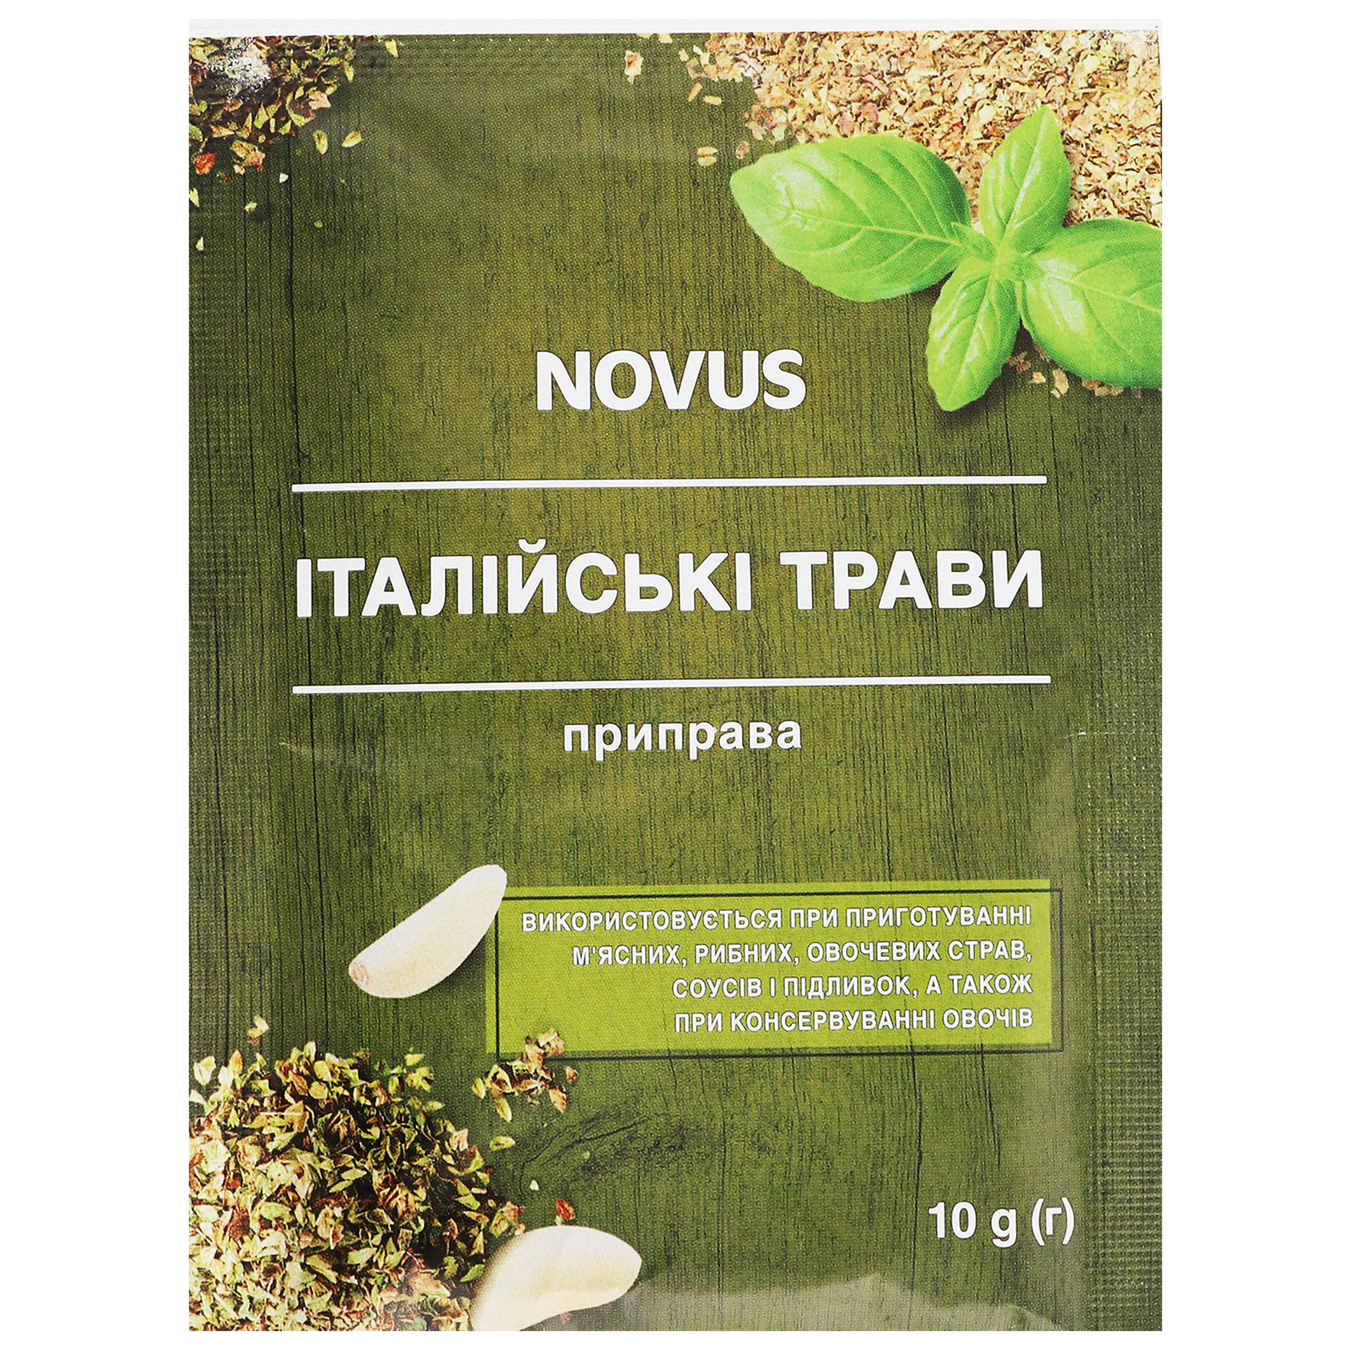 Novus Italian Herbs Spice 10g